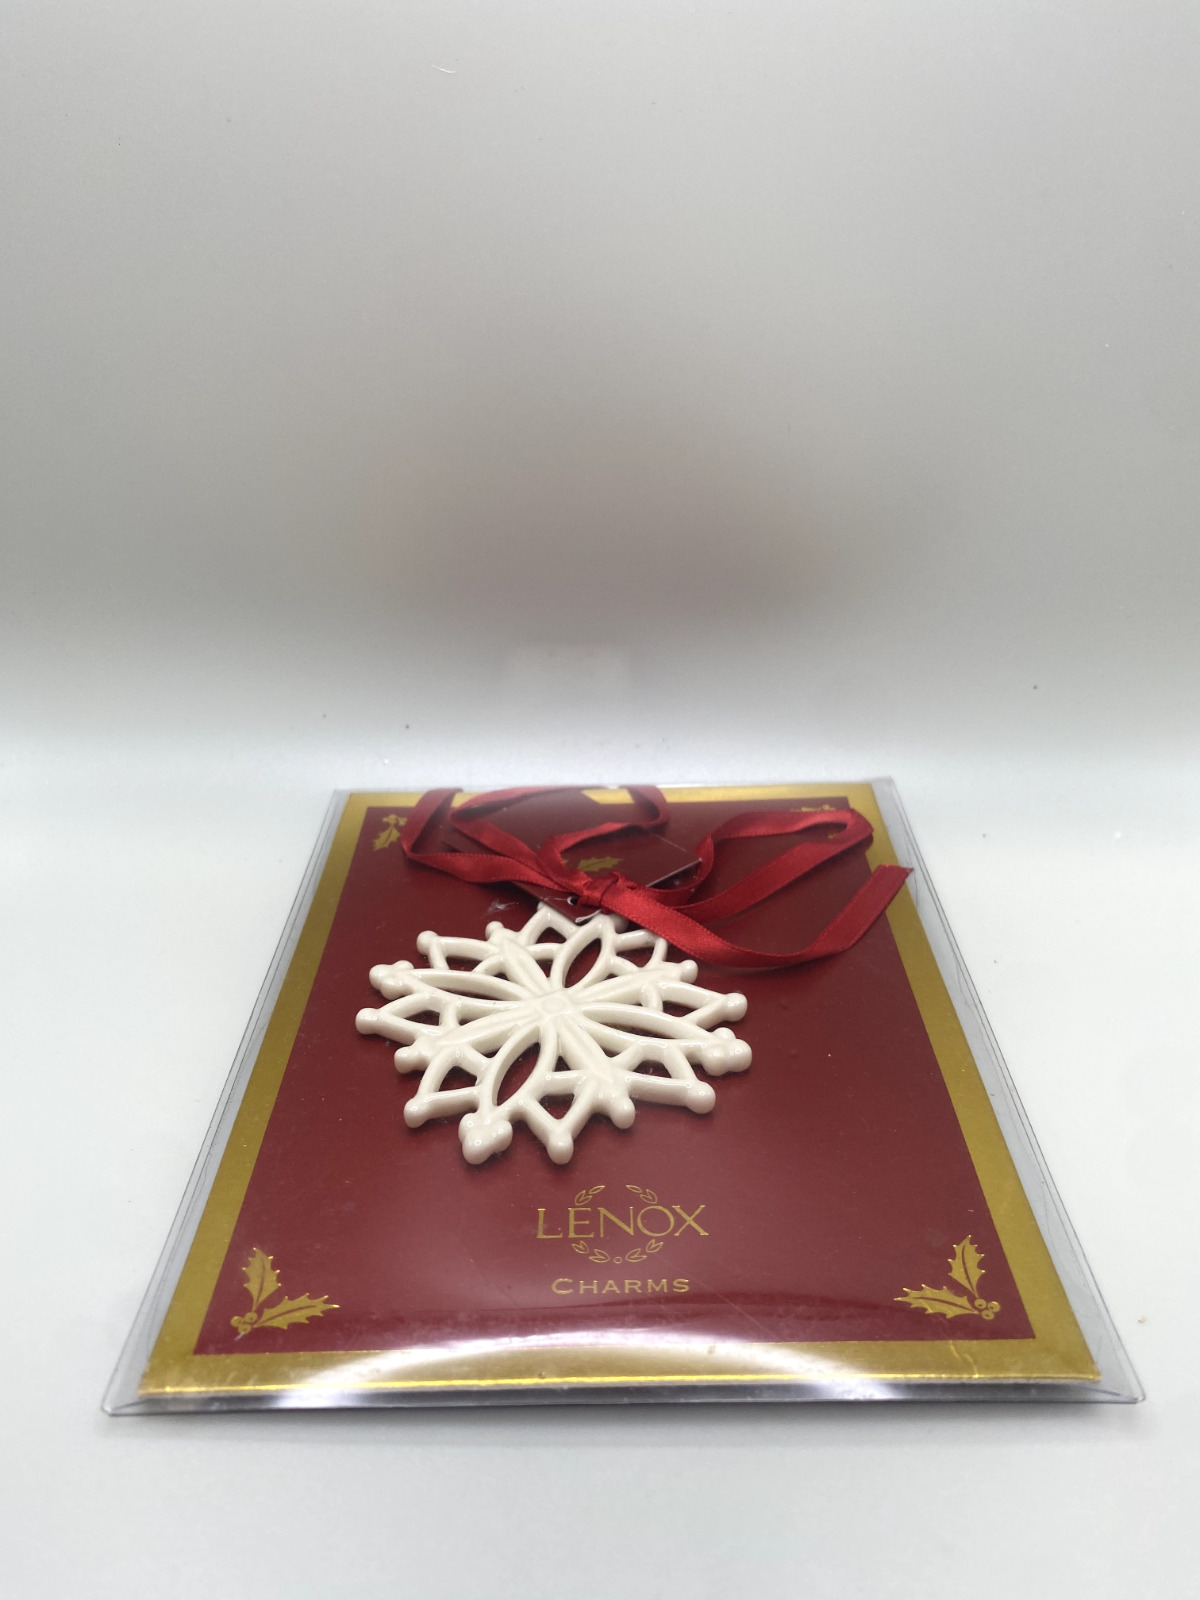 Lenox Charms Pierced Star Snowflake Christmas Ornament